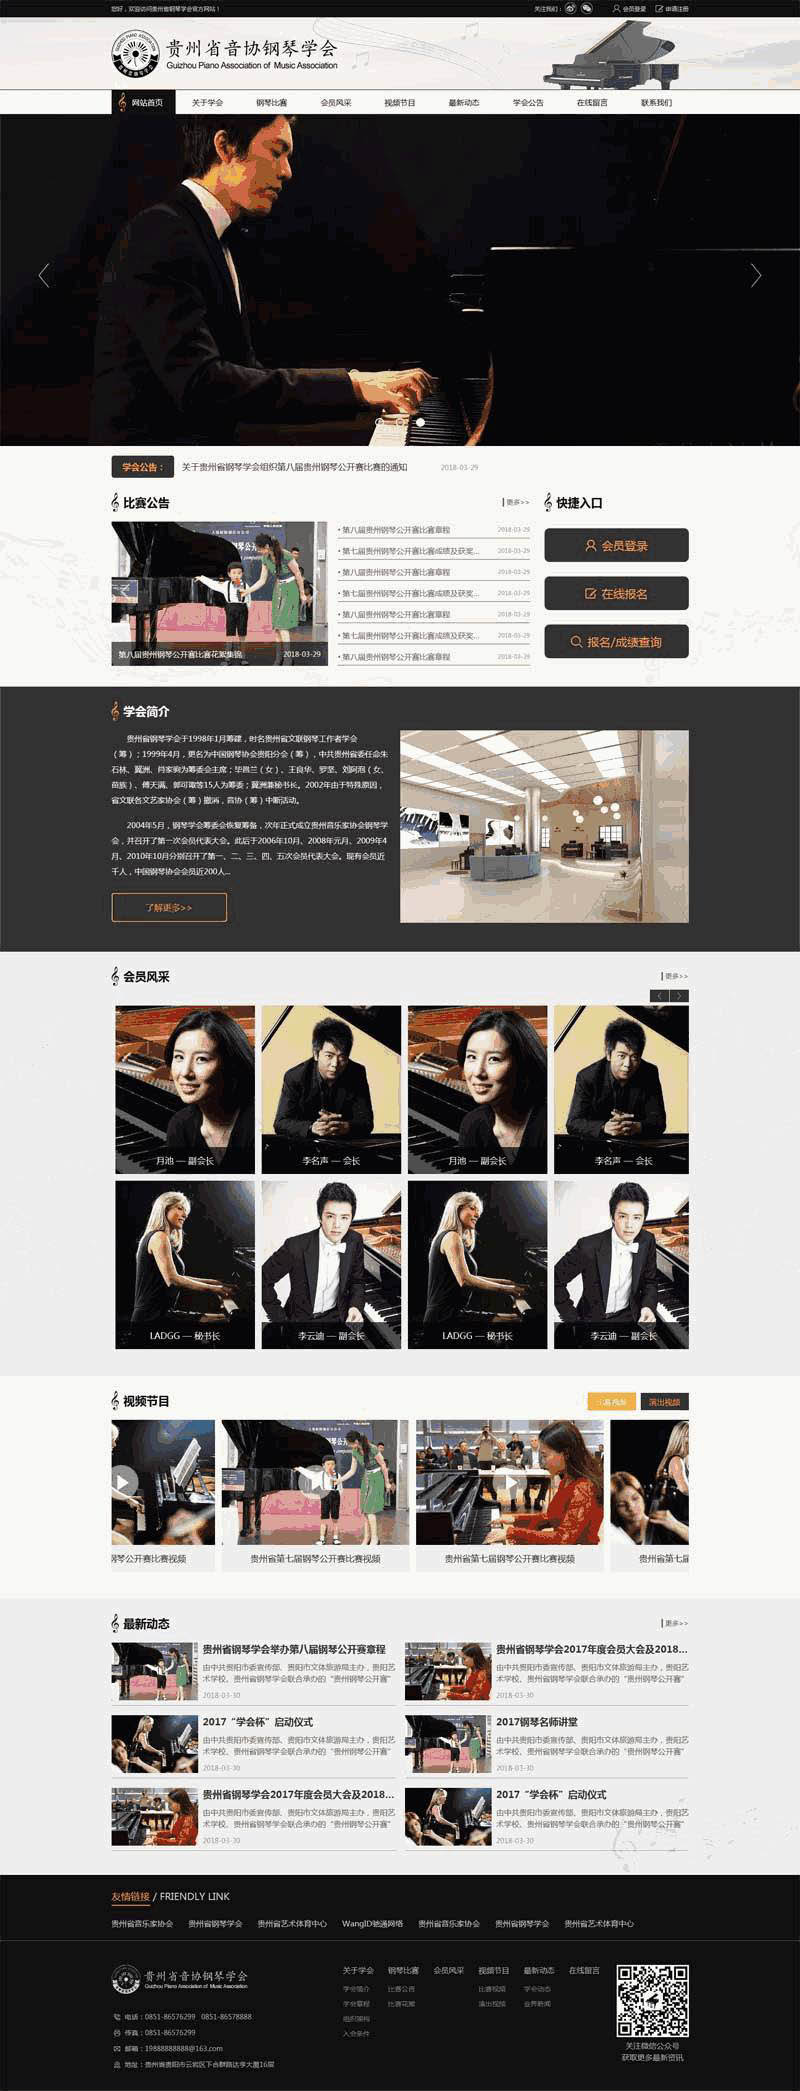 黑色的音协钢琴学会官方网站制作_网站建设模板演示图